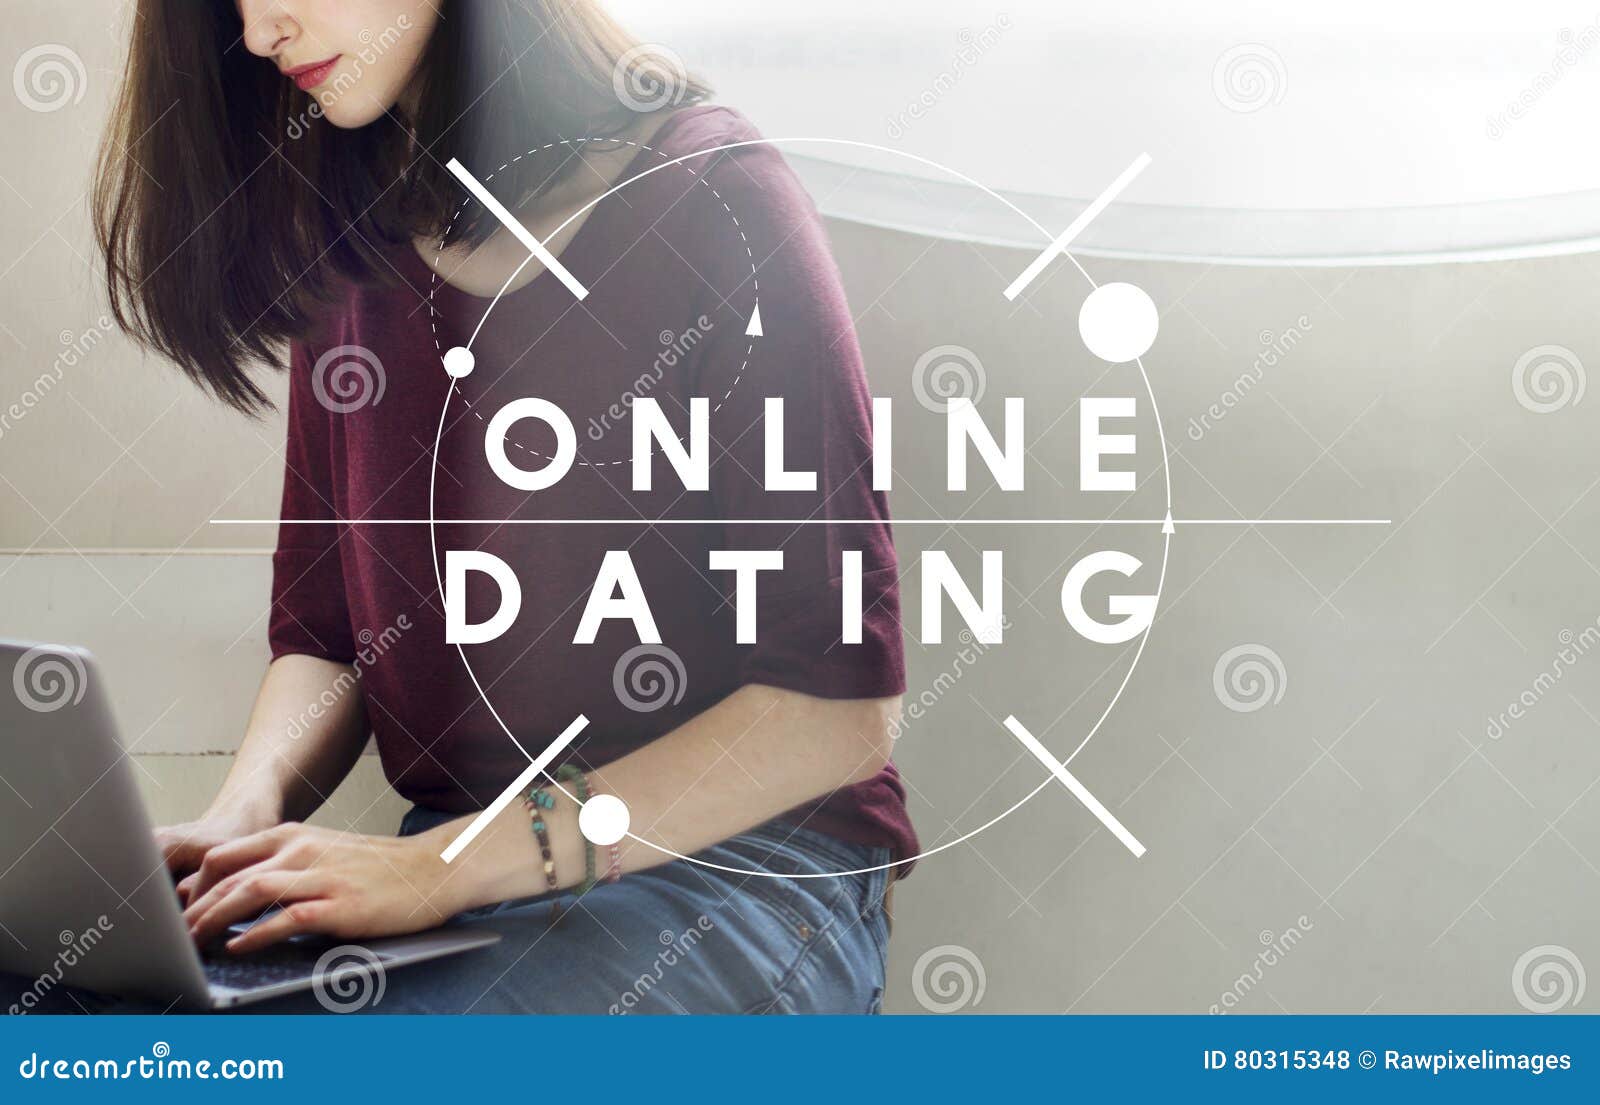 göra online dating relationer senaste